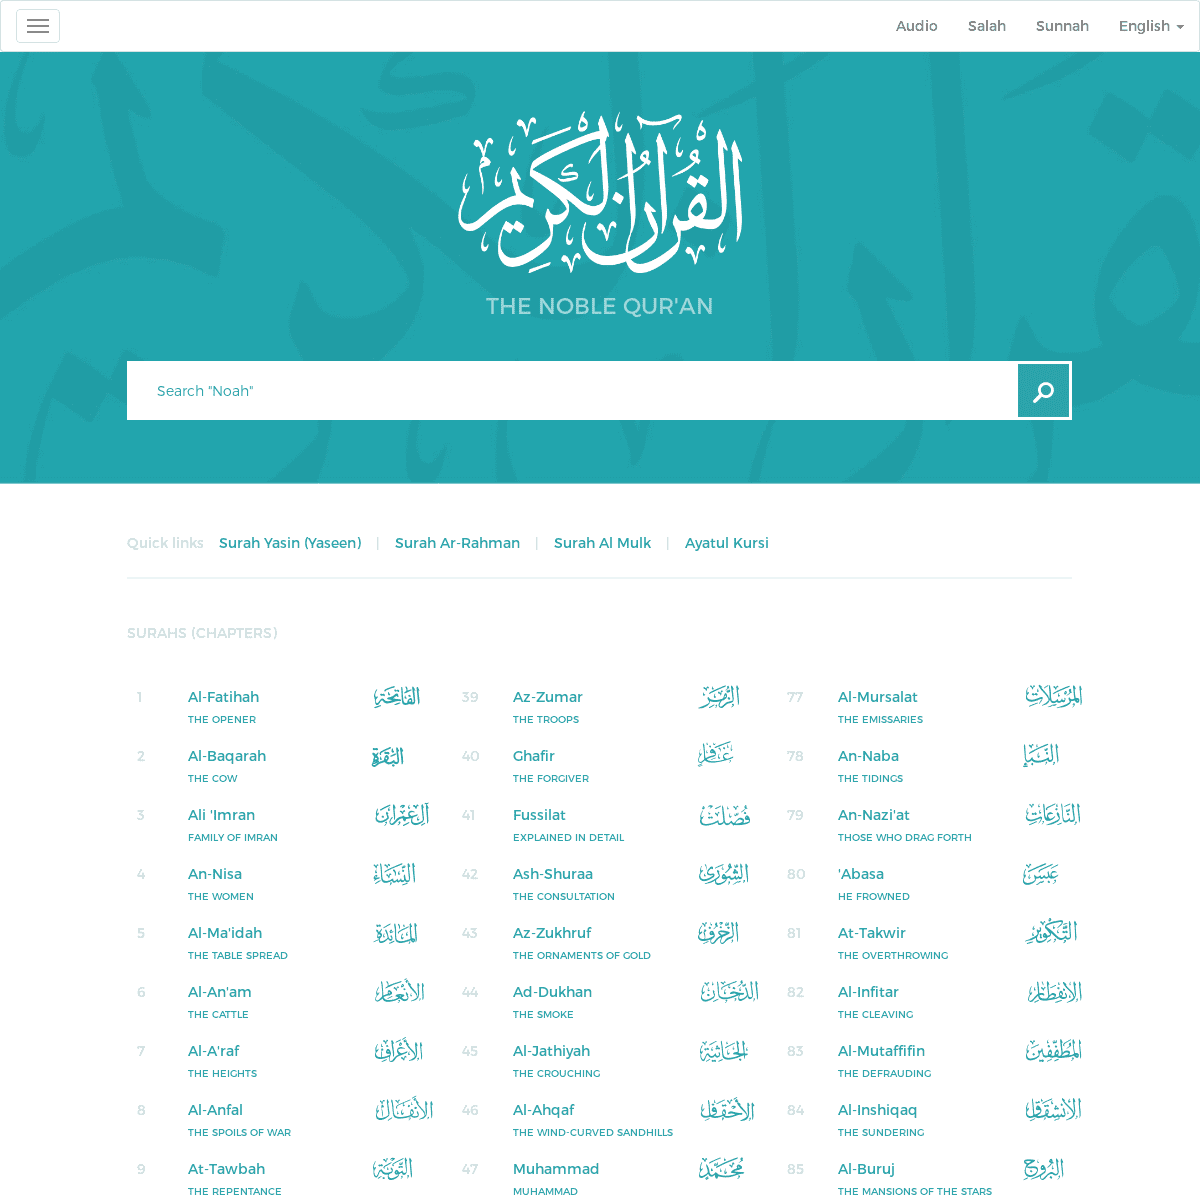 A complete backup of quran.com